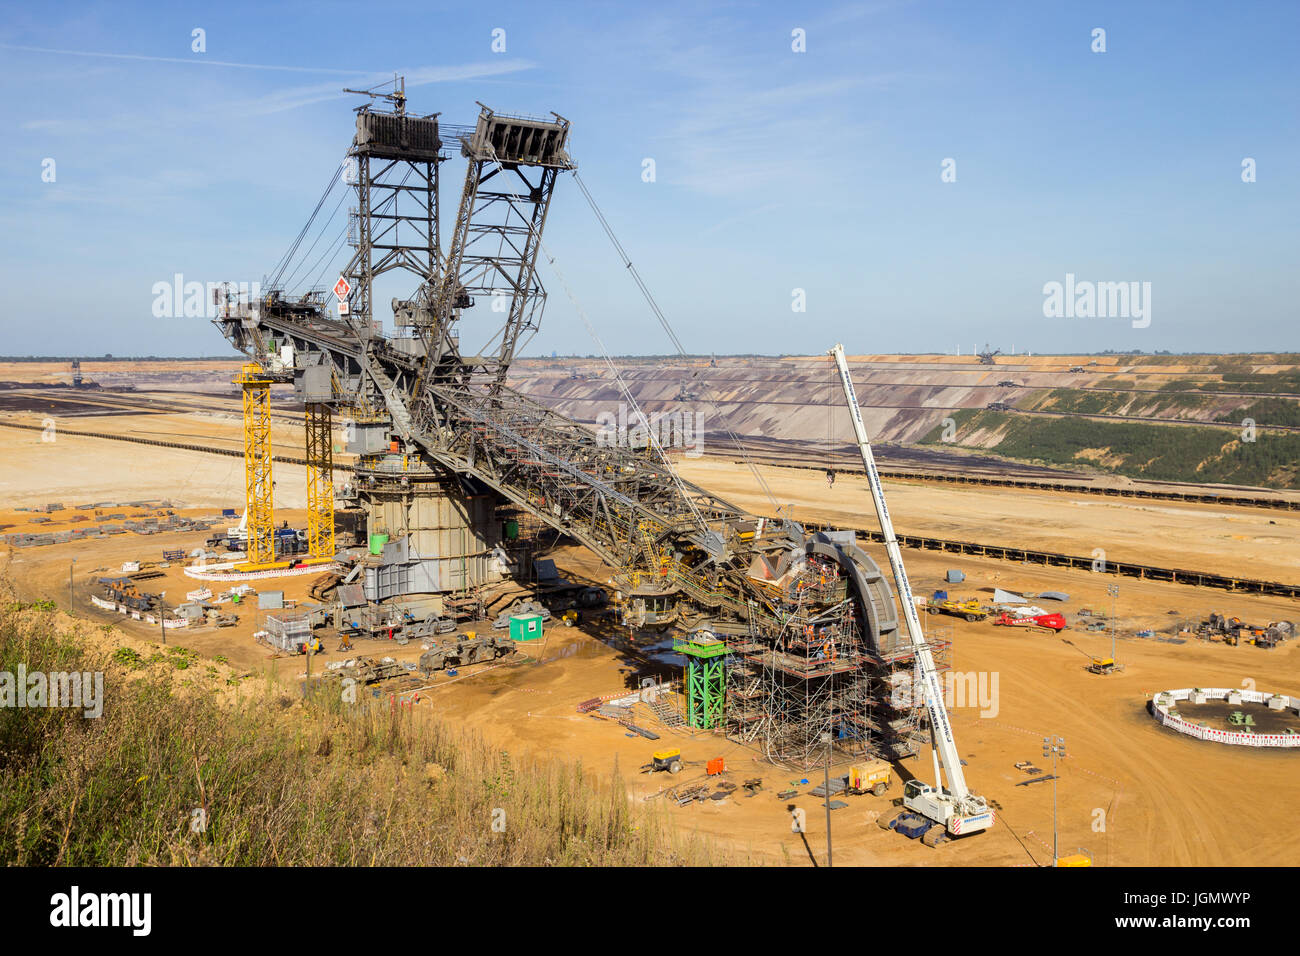 INDEN, Deutschland - 30. Juni 2012: Bau einer großen Bergbau Schaufelrad Bagger für Braunkohle im Tagebau-mine bei Inden, Germany Graben. Stockfoto